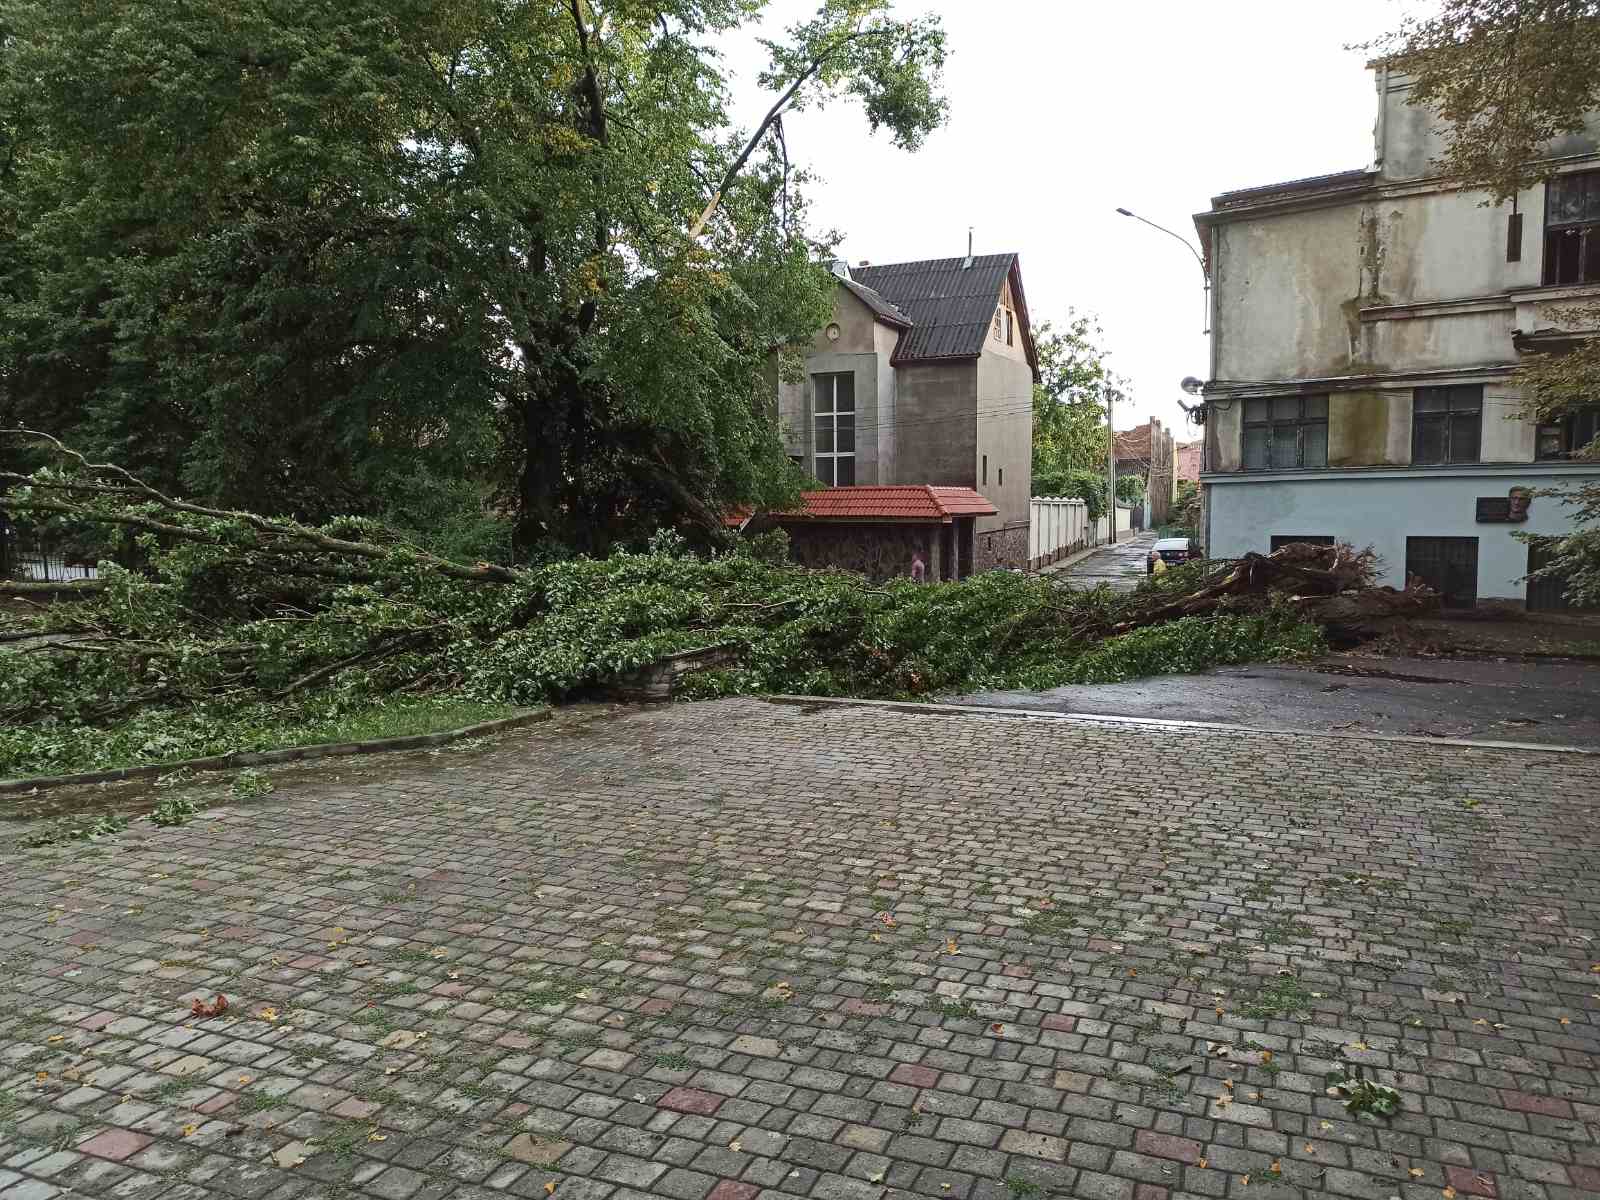 Через негоду в Ужгороді впало 7 дерев, одне на машину (ФОТО, ВІДЕО)